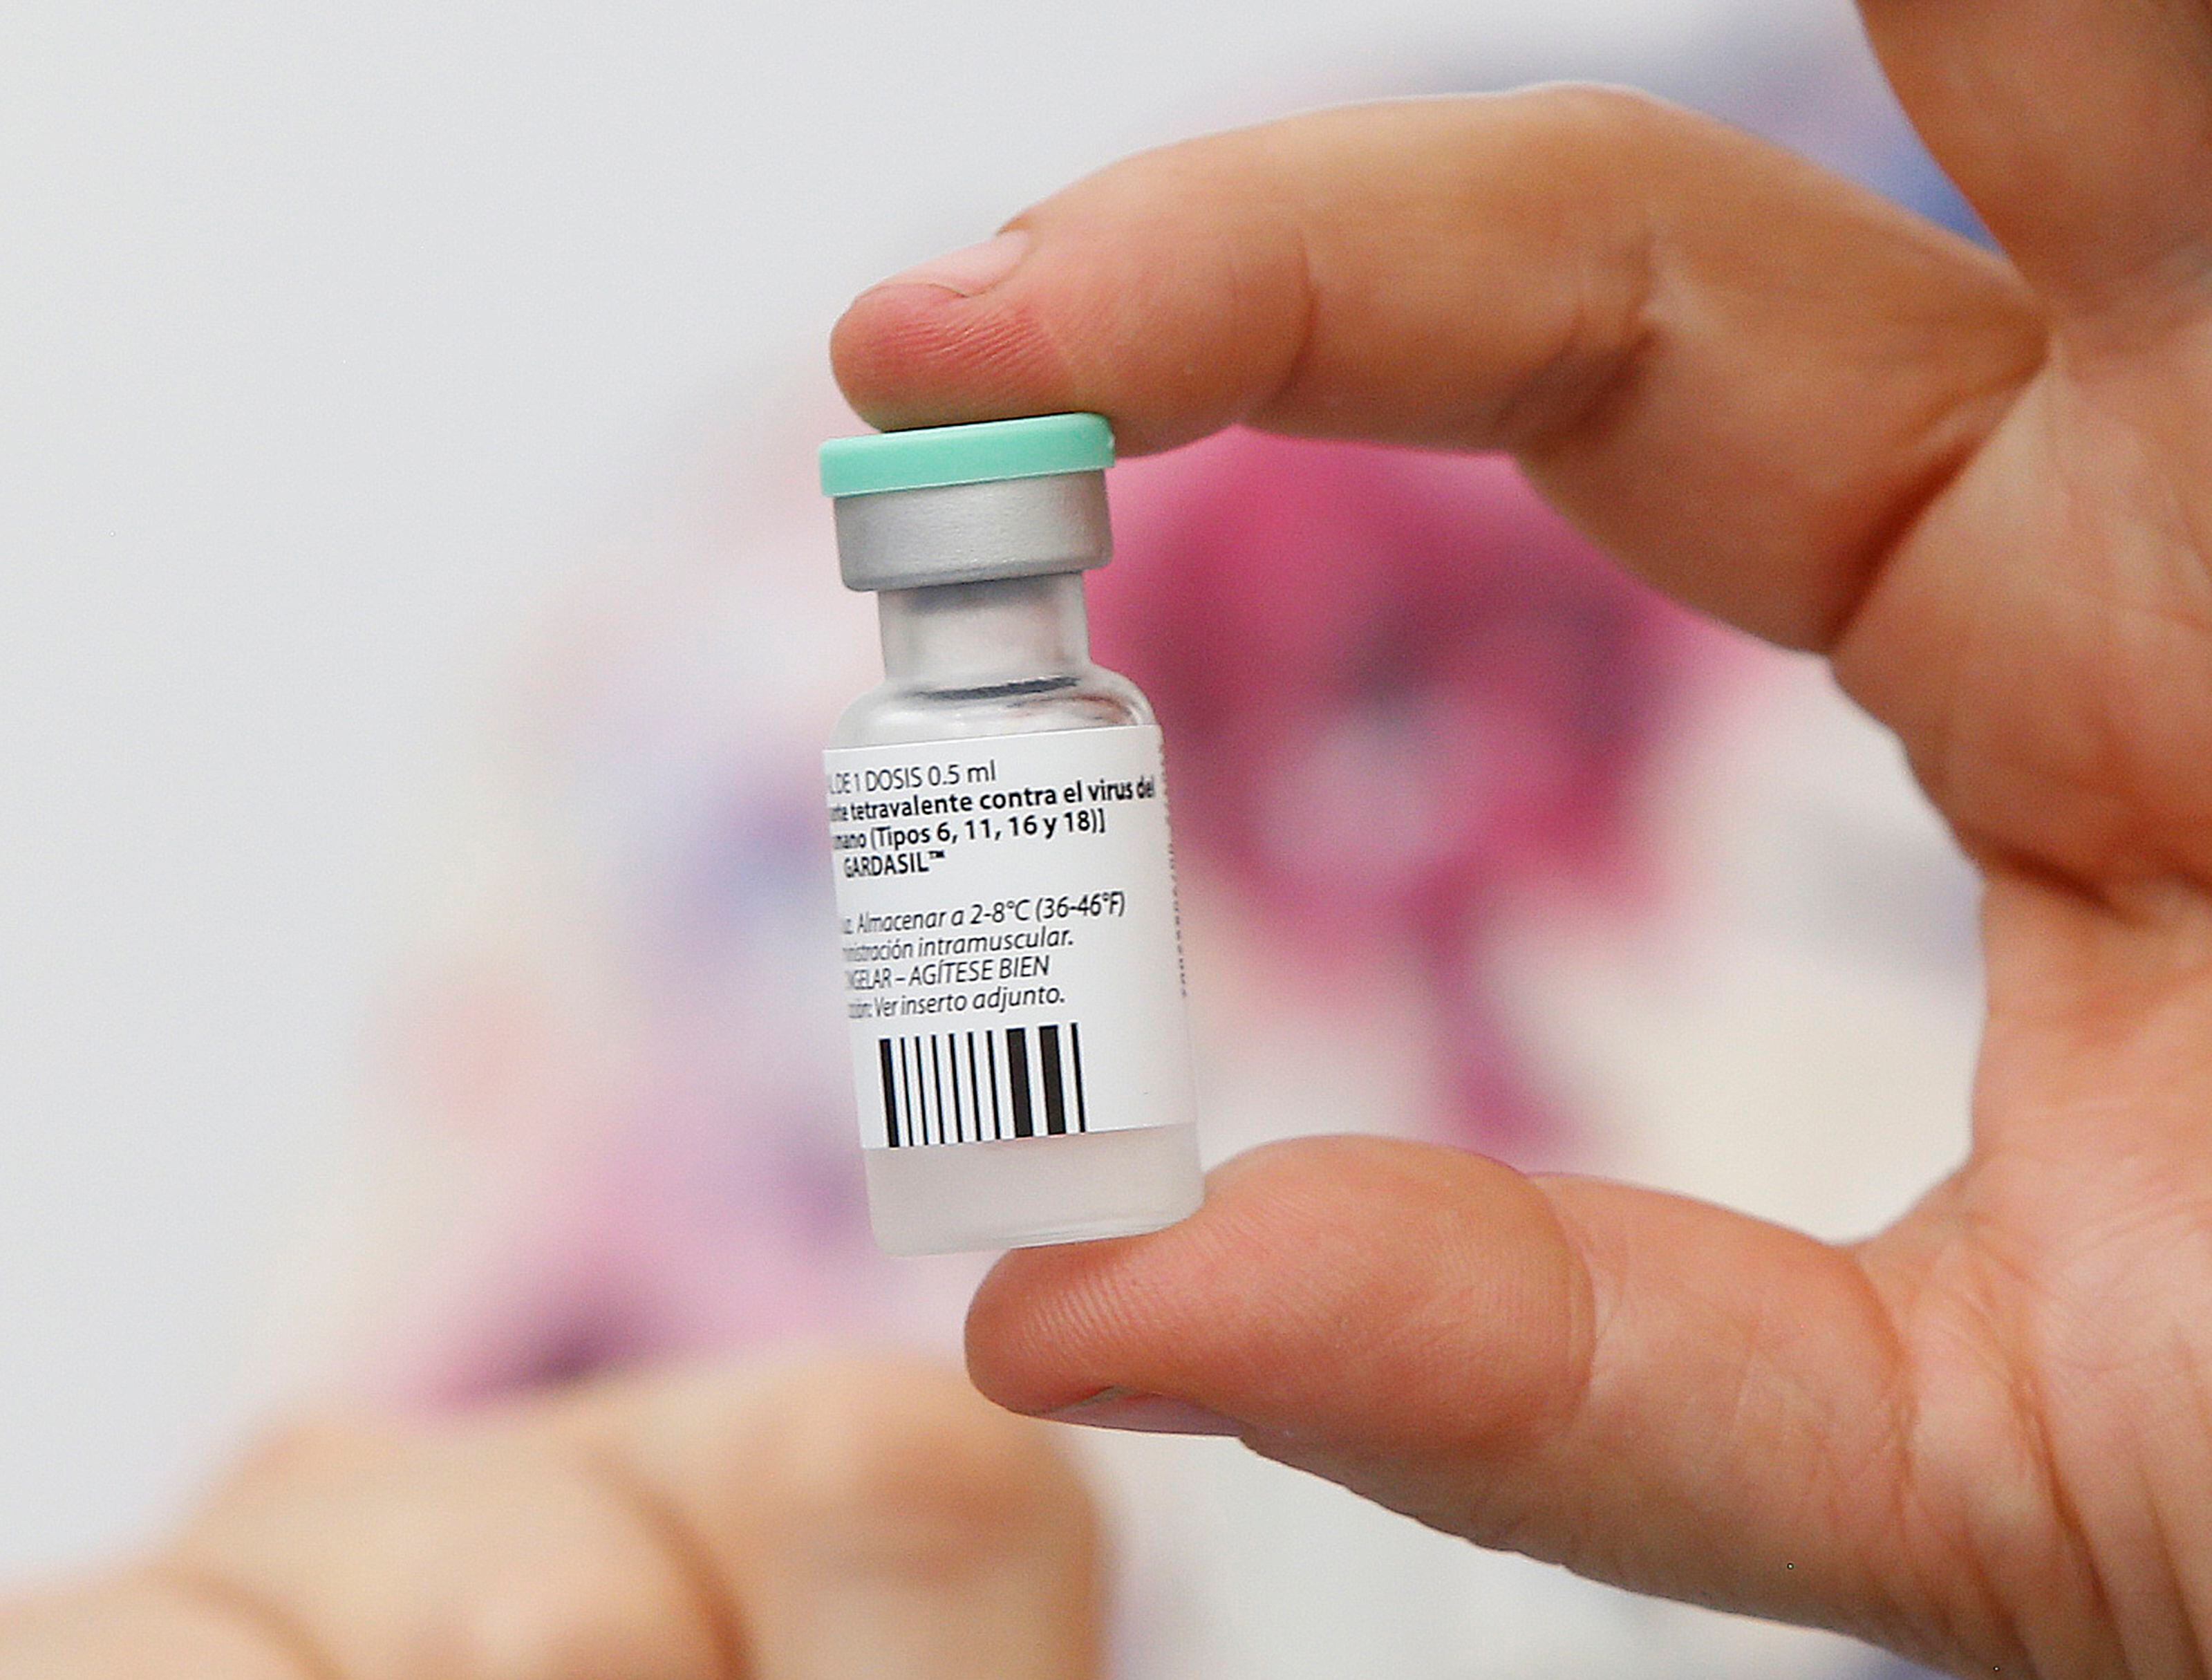 En Costa Rica, la vacuna contra el virus del papiloma humano se coloca en el sistema público en las niñas de diez años; mujeres mayores y hombres pueden conseguirla en el mercado privado.